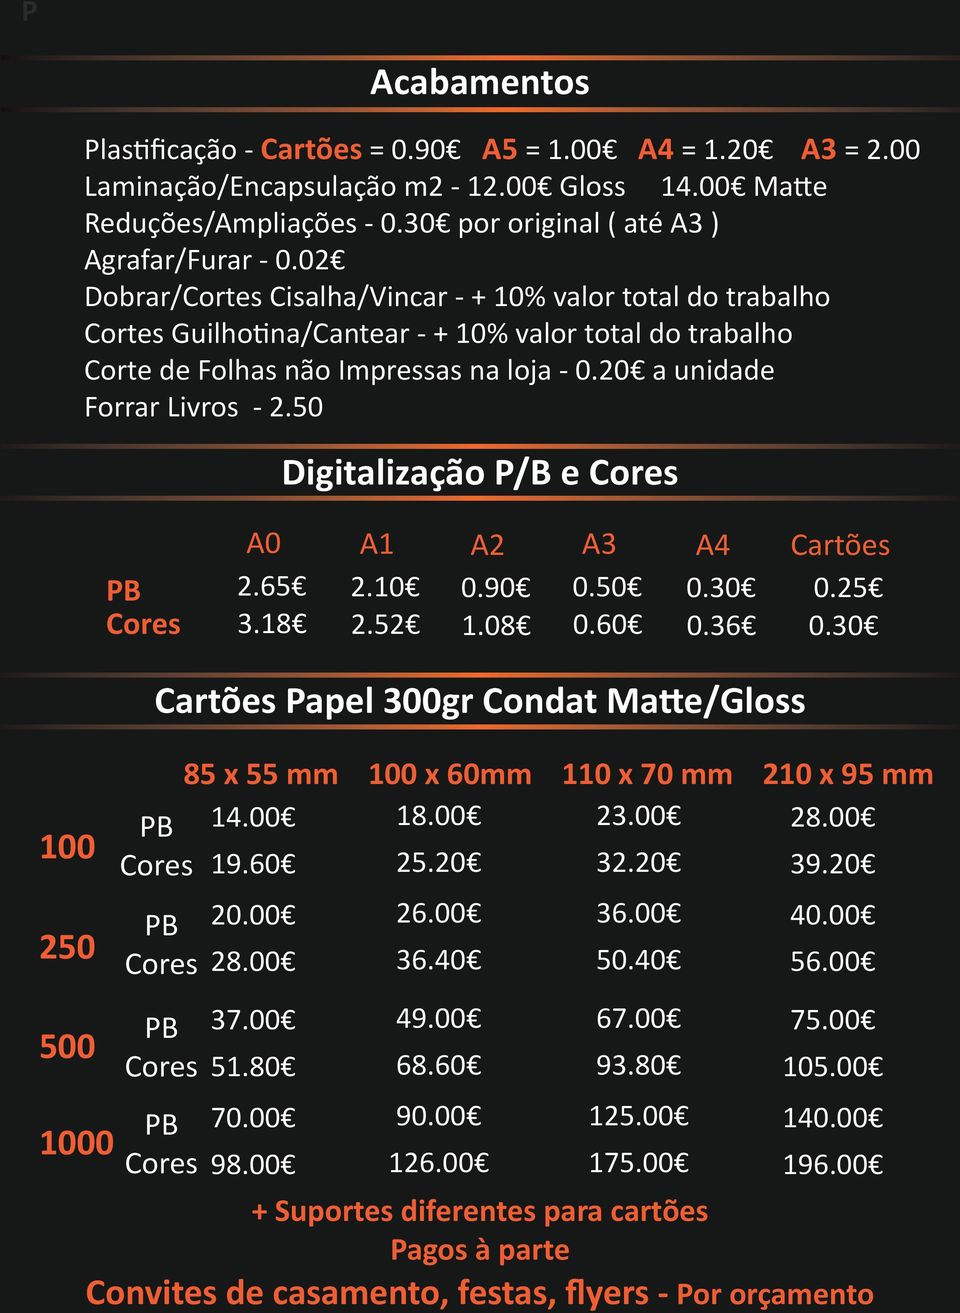 50 Digitalização P/B e Cores PB Cores A0 A1 A2 Cartões 2.65 3.18 2.10 2.52 0.90 1.08 0.60 0.30 0.36 0.25 0.